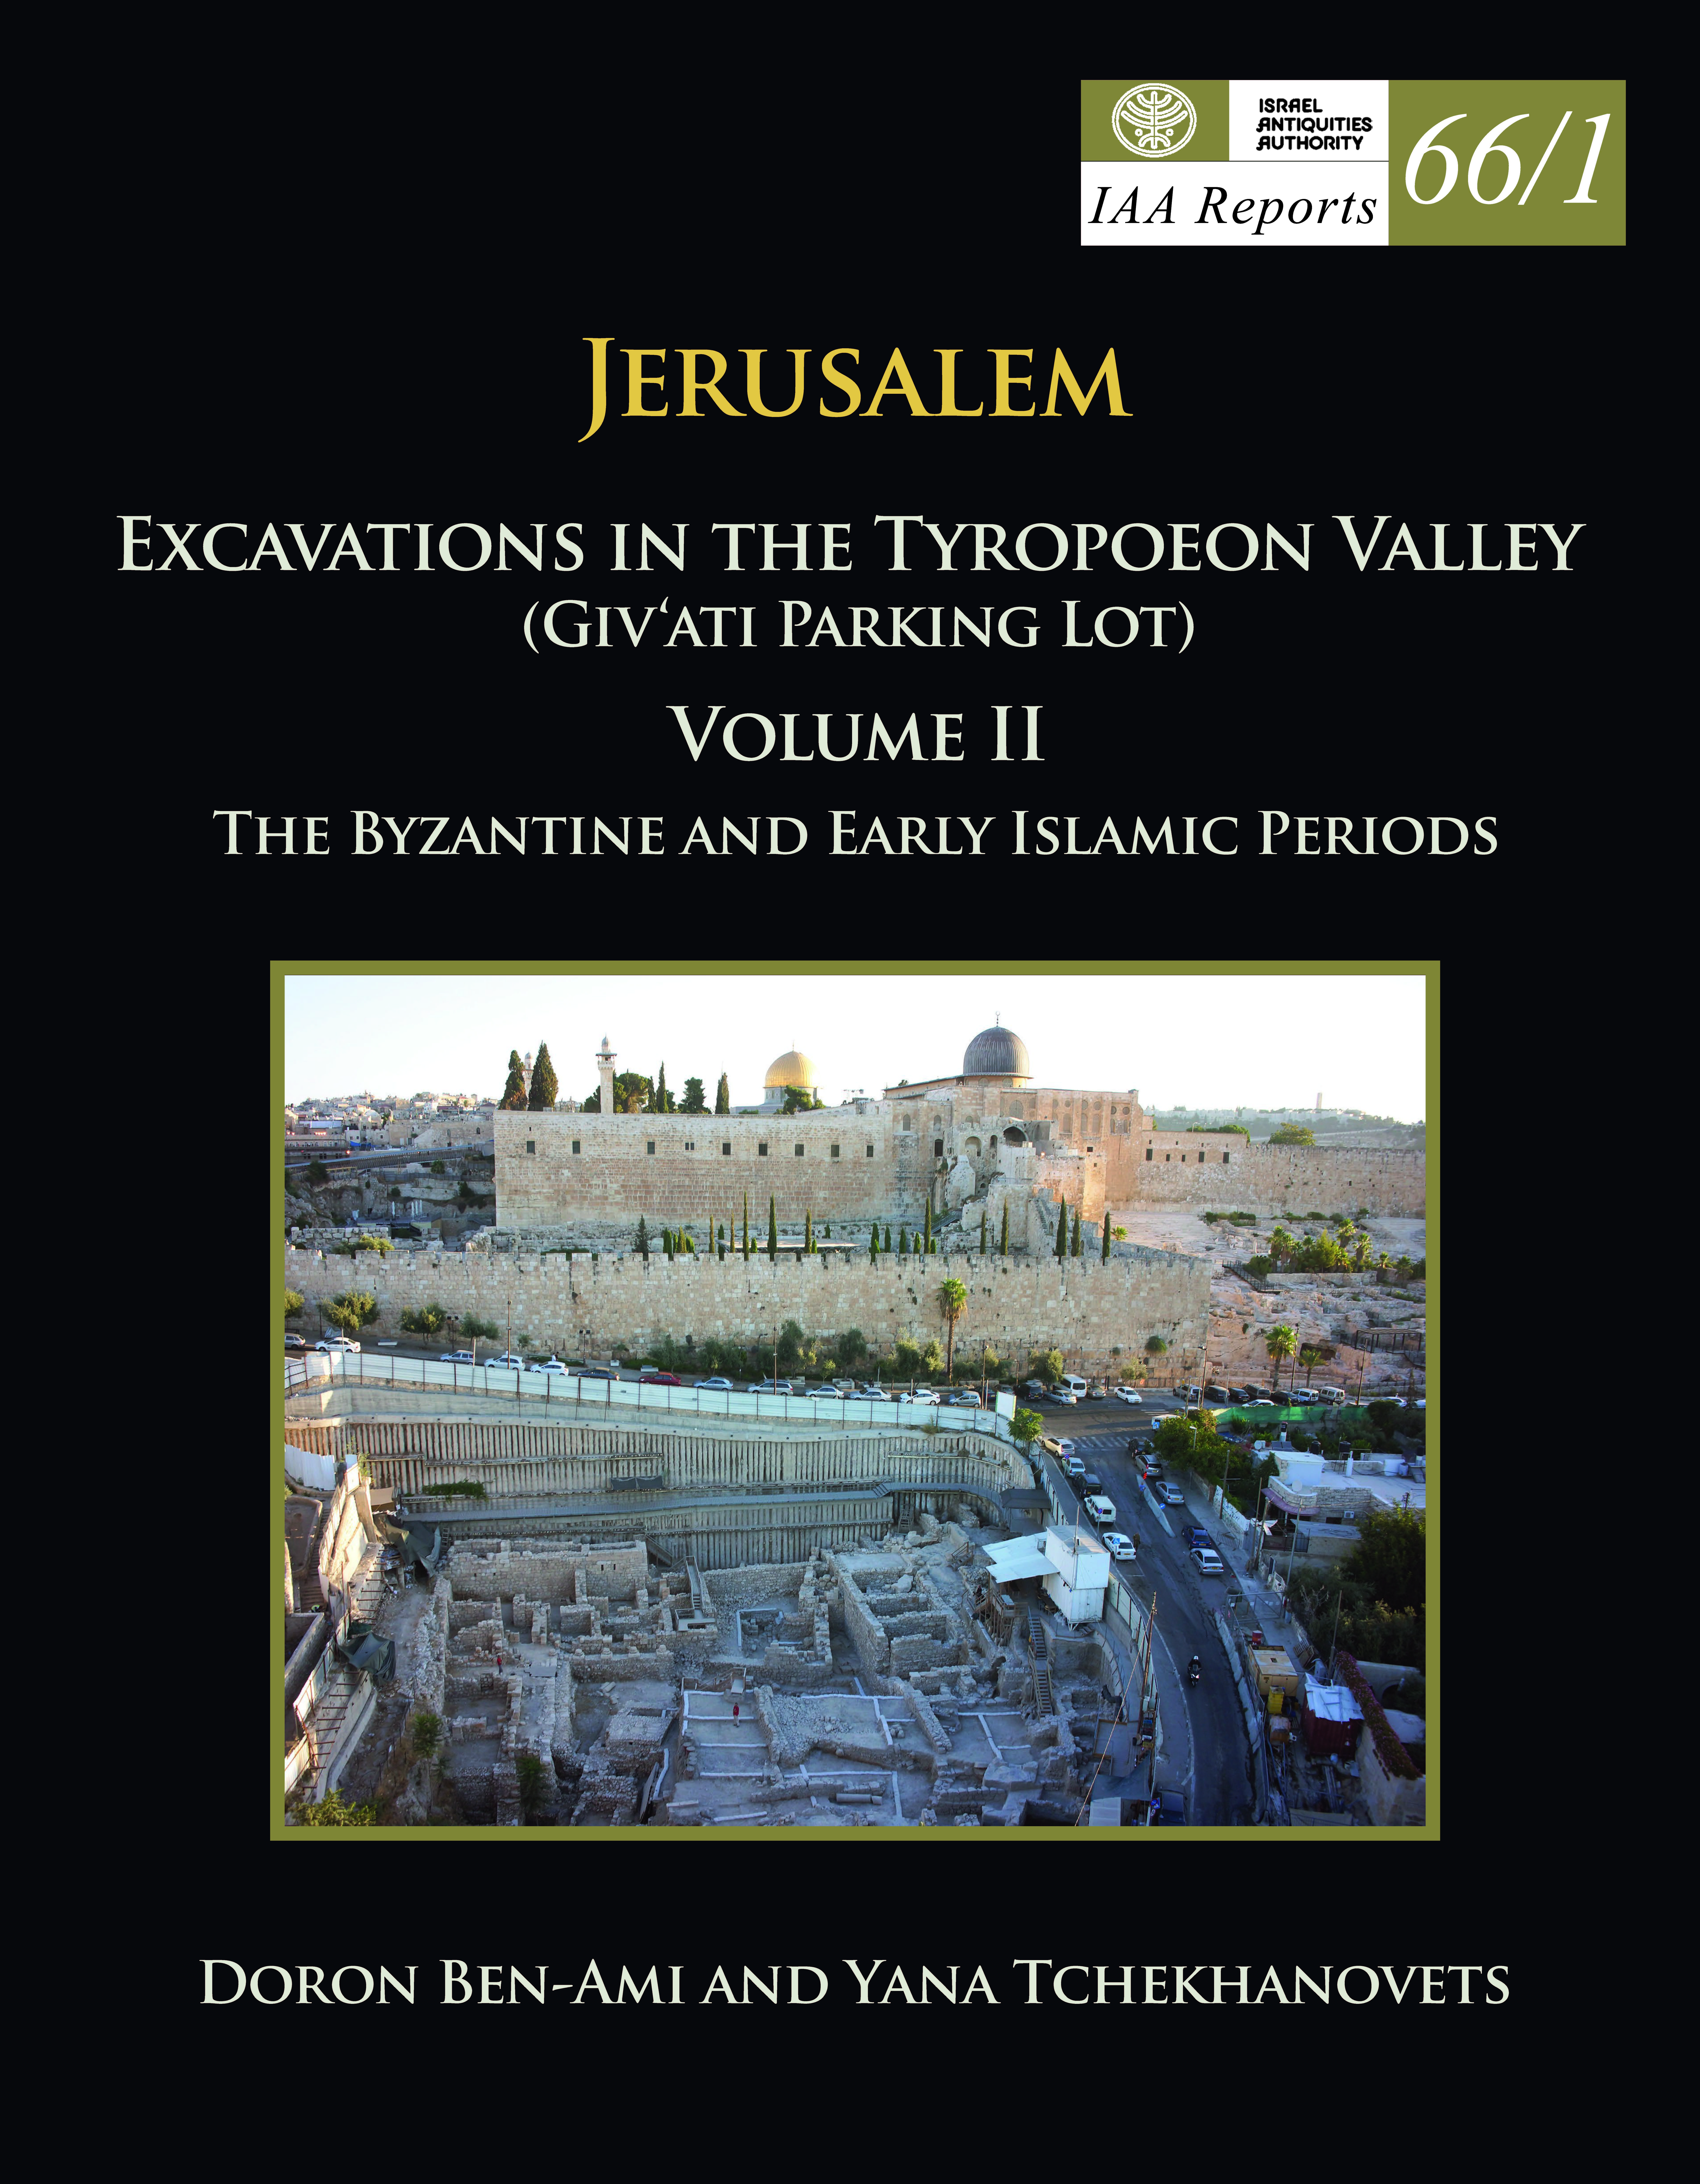 IAA Reports 66/1, ירושלים חפירות בעמק הטירופיאון חניון גבעתי כרך: II התקופה הביזנטית והתקופות האיסלמיות הקדומות